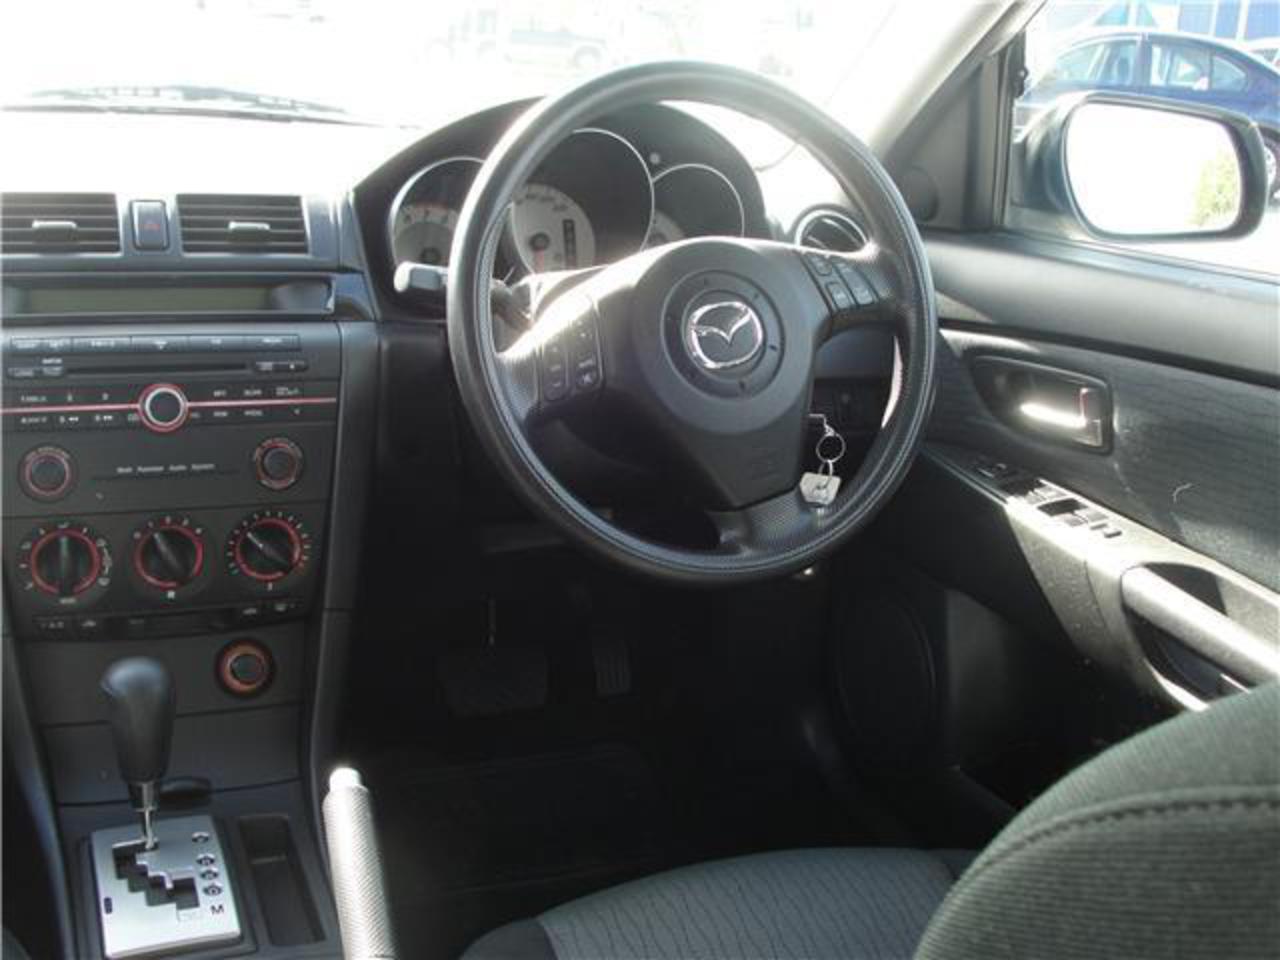 2007 Mazda 3 SPORTHATCH GSX - $17,990.00